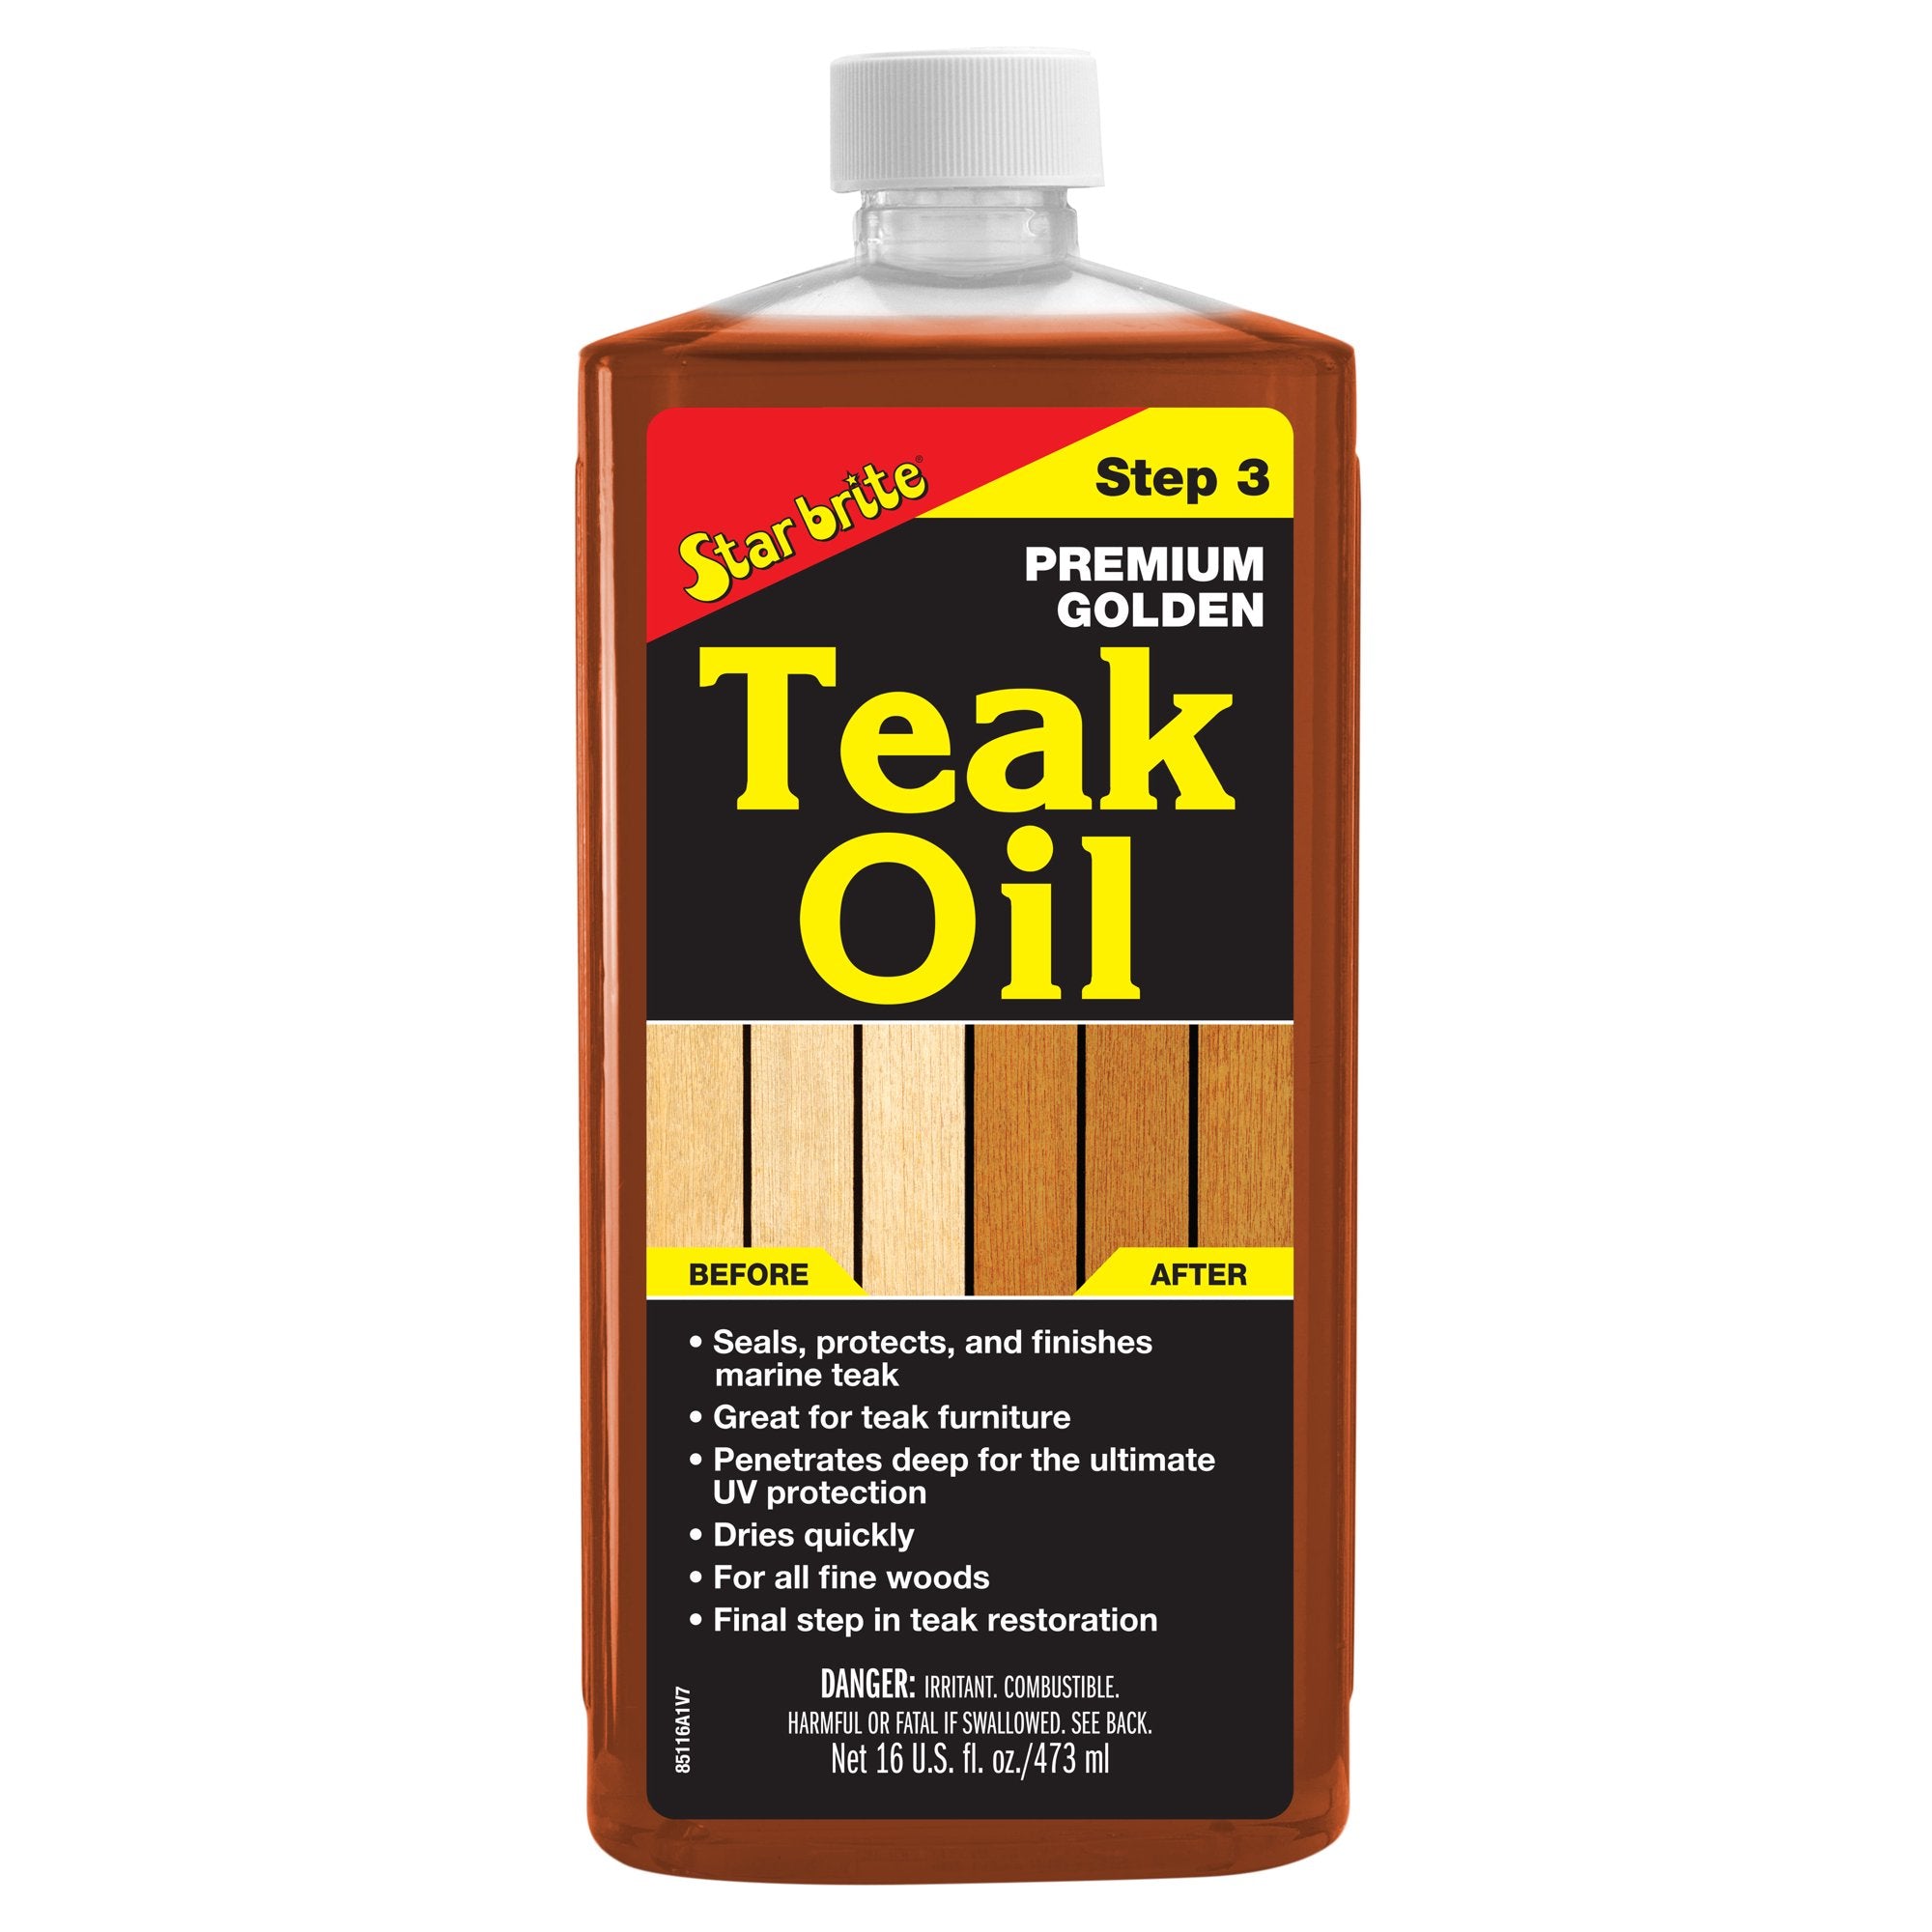 Premium Golden Teak Oil -Step 3 85116